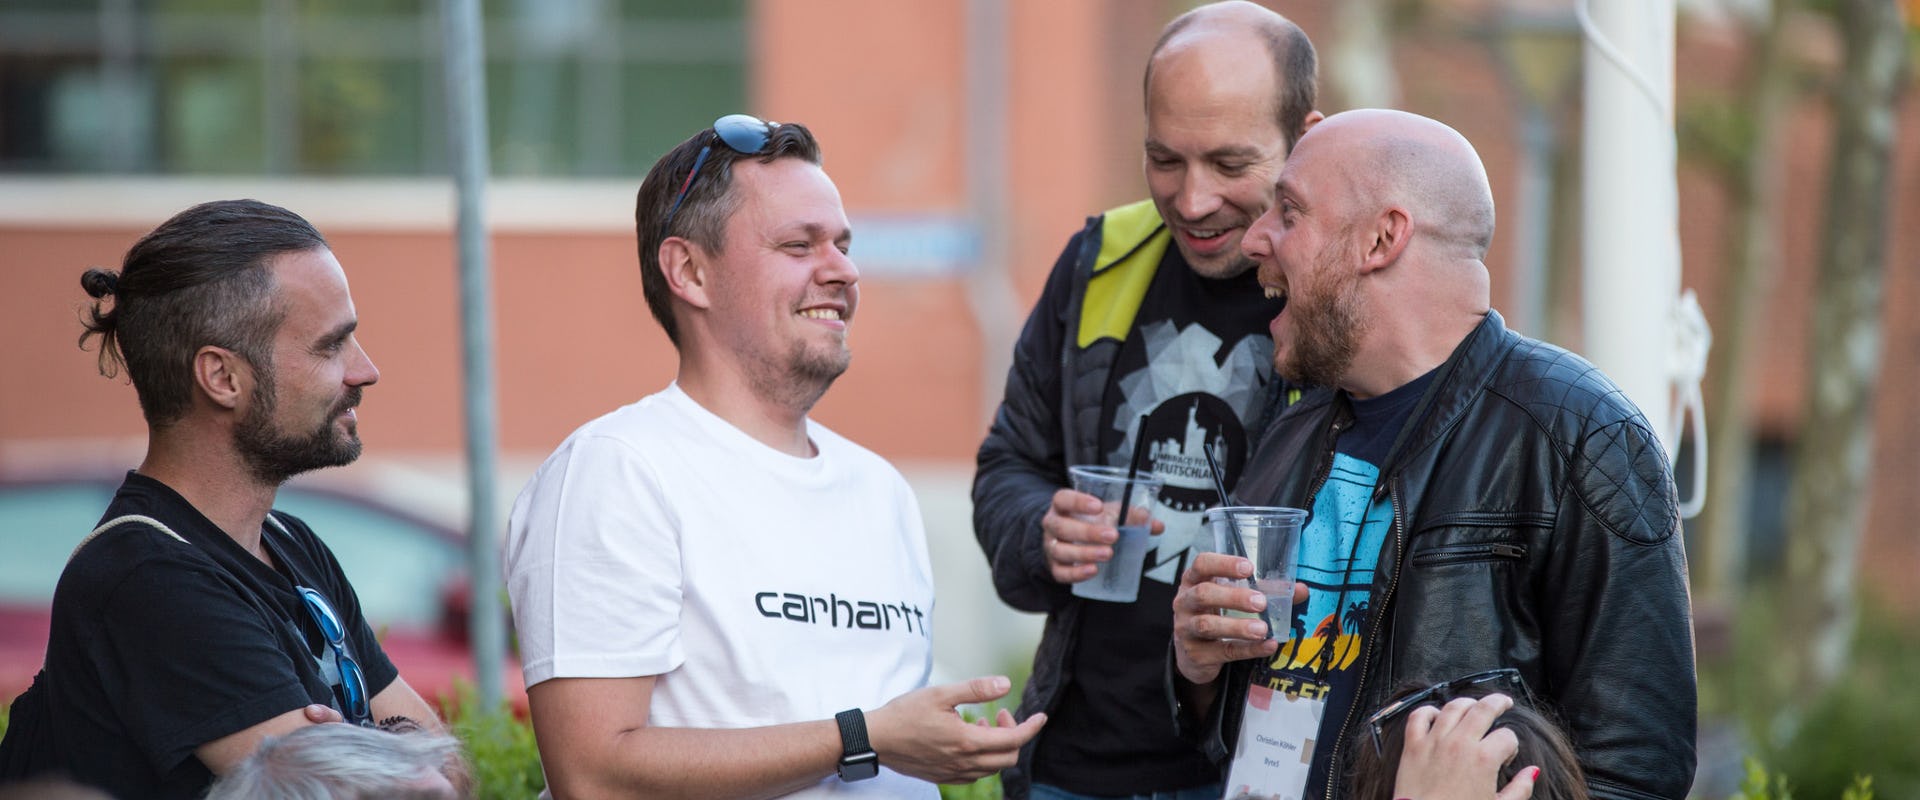 Marcel Wege, Sören Deger, Chris Köhler byte5-Team bei der Pre-Party Codegarden 2018